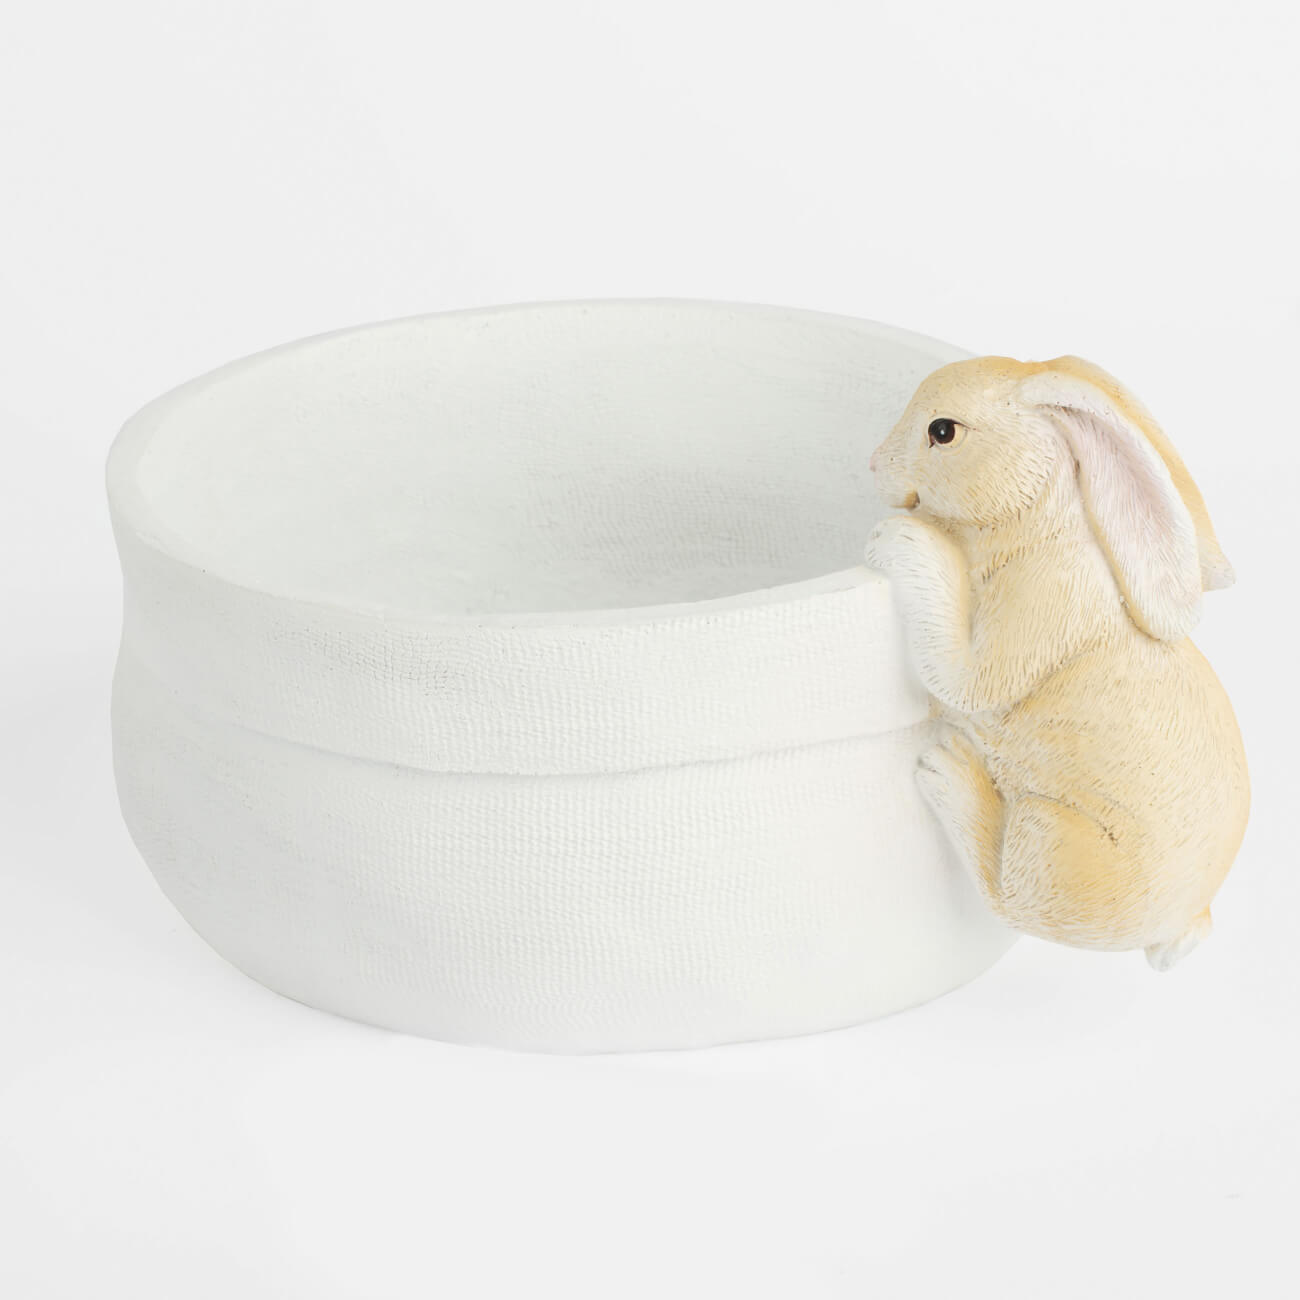 Ваза декоративная, 20х16 см, полирезин, бежевая, Кролик на мешке, Natural Easter салфетка под приборы 30x45 см полиэстер белая кролик в листве natural easter